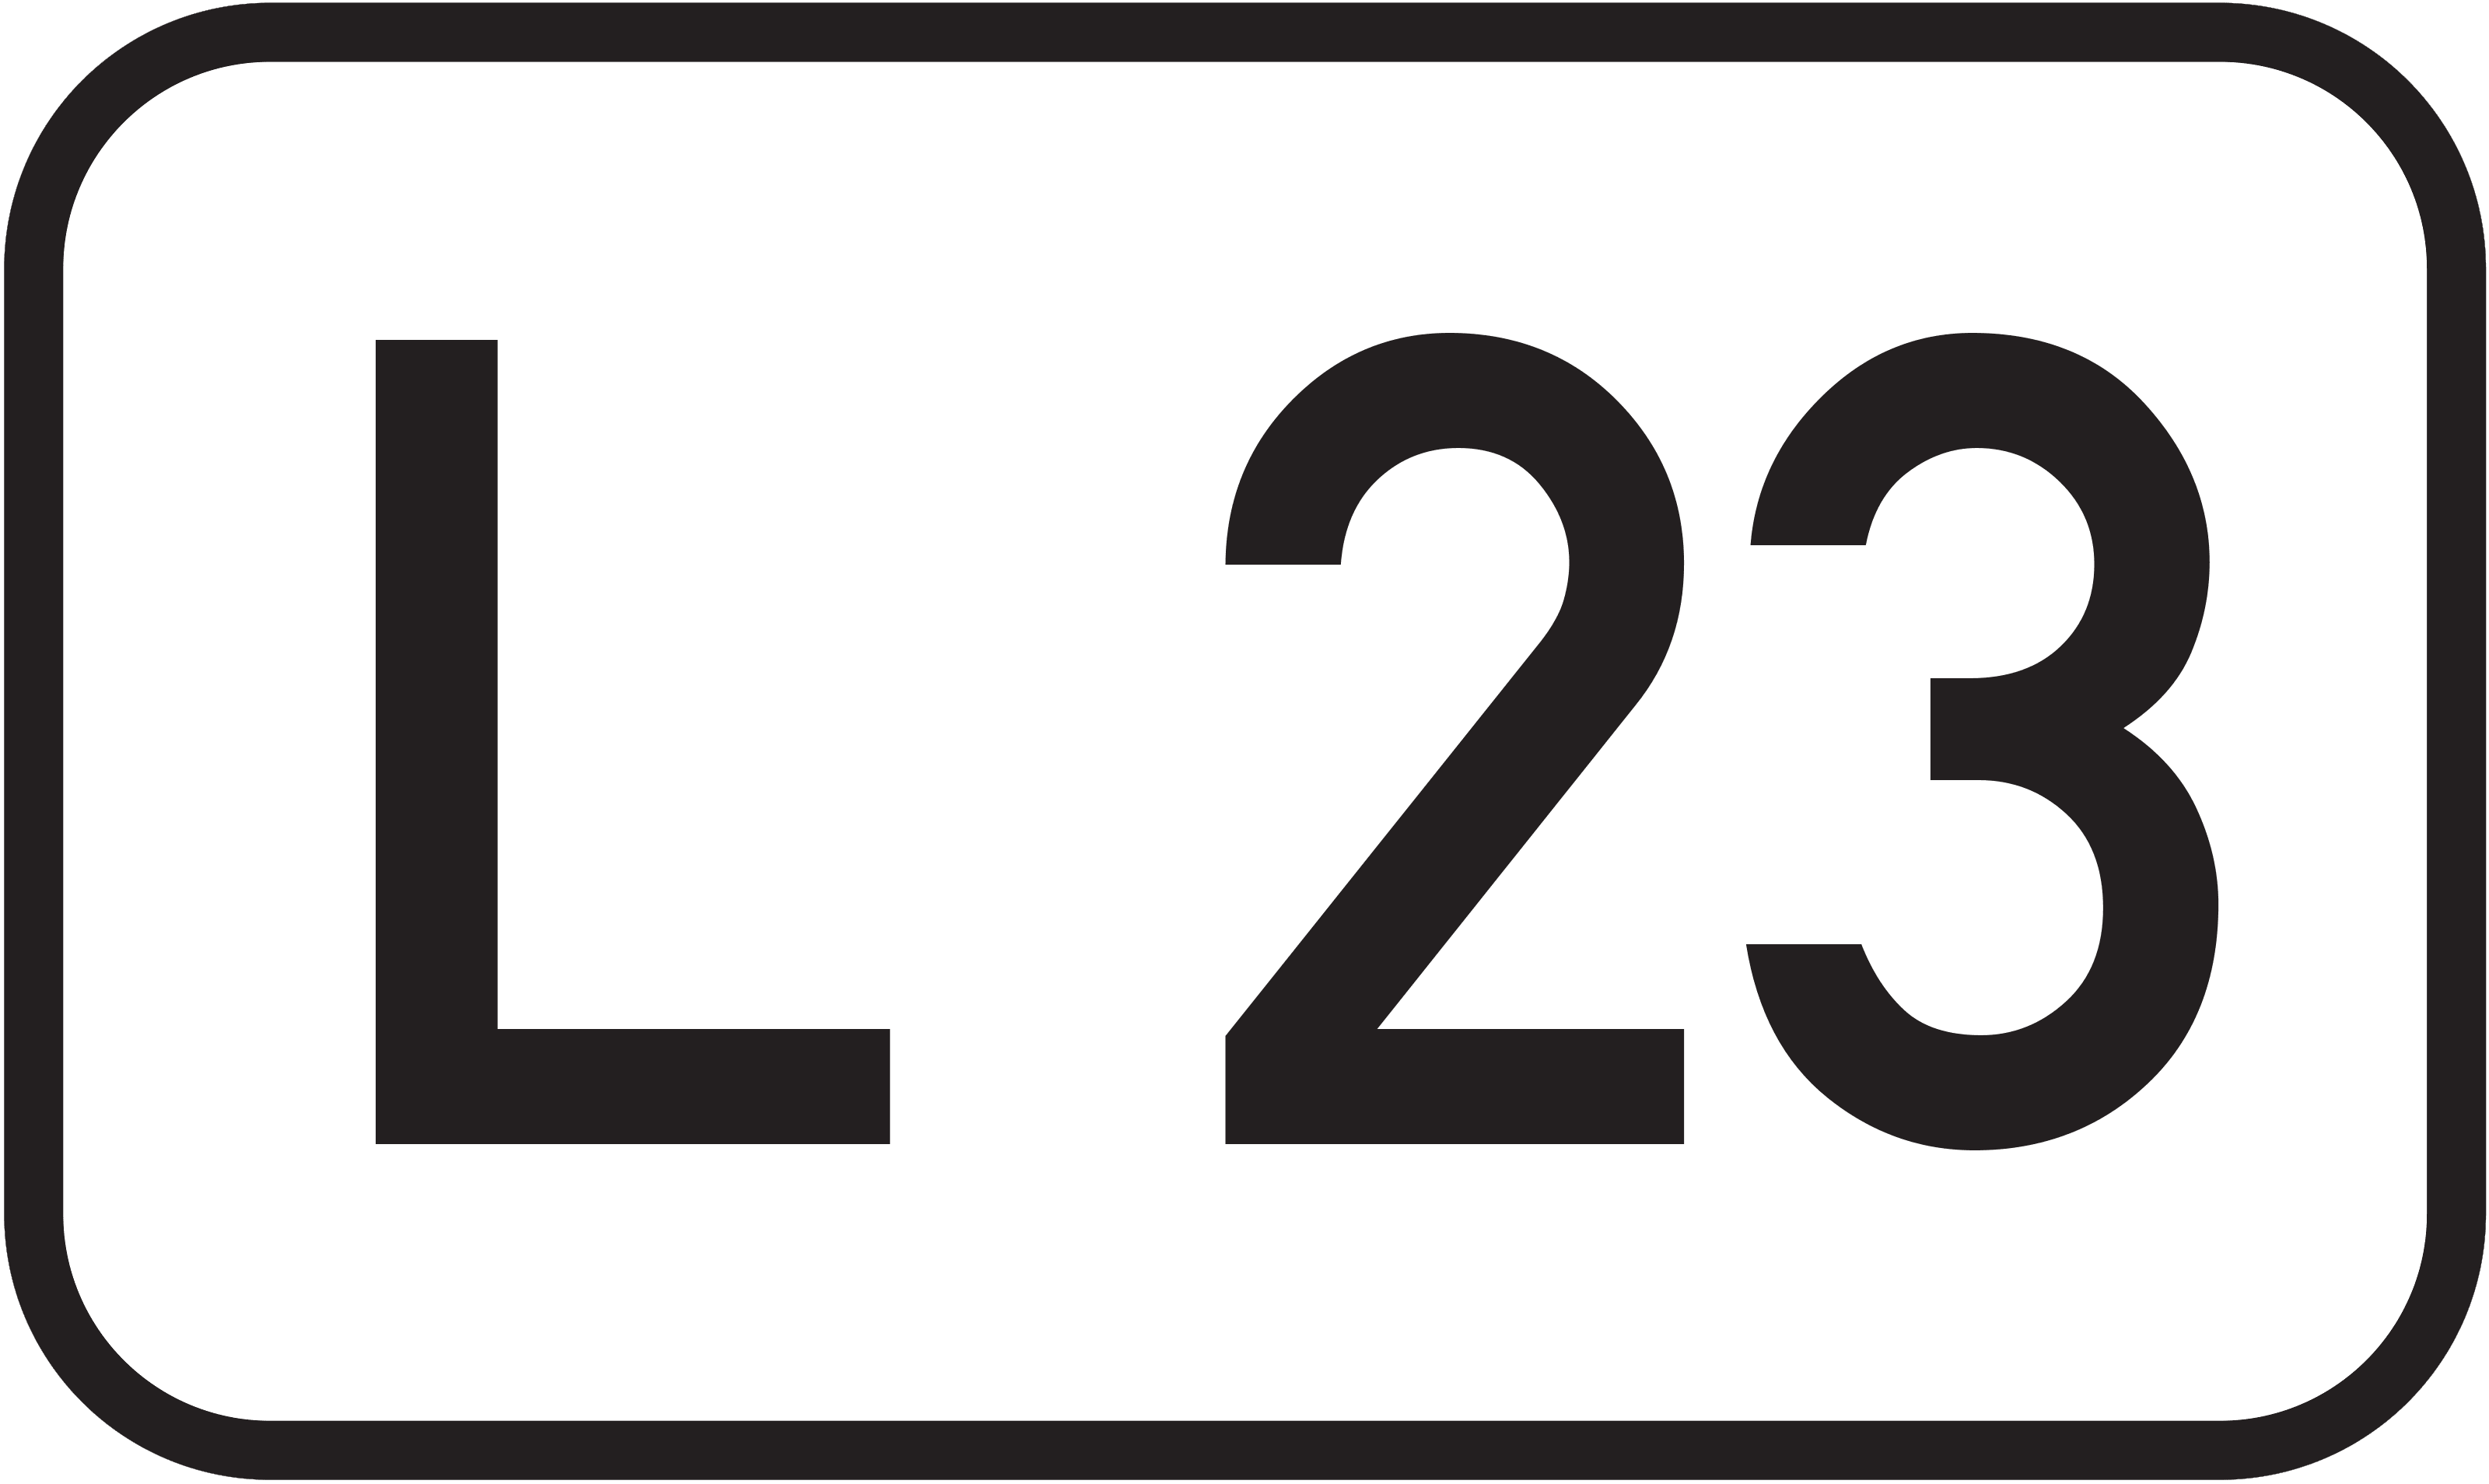 Landesstraße L 23